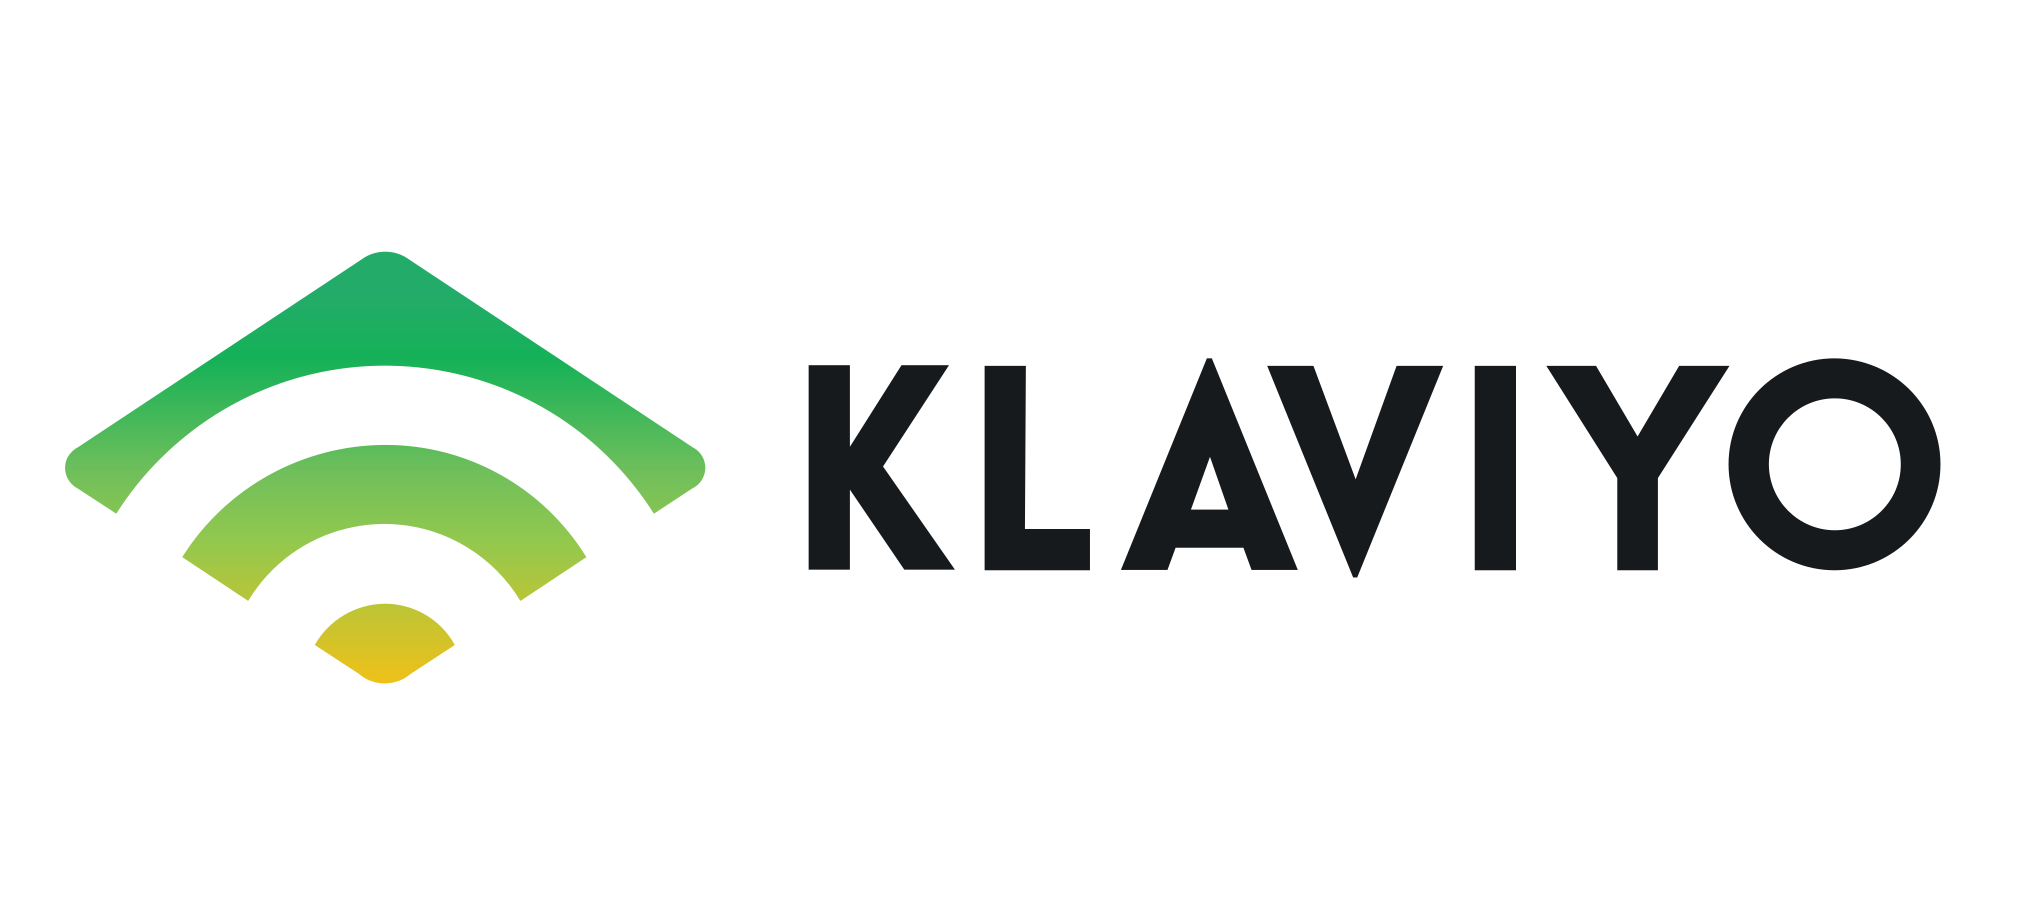 klaviyo-vector-logo